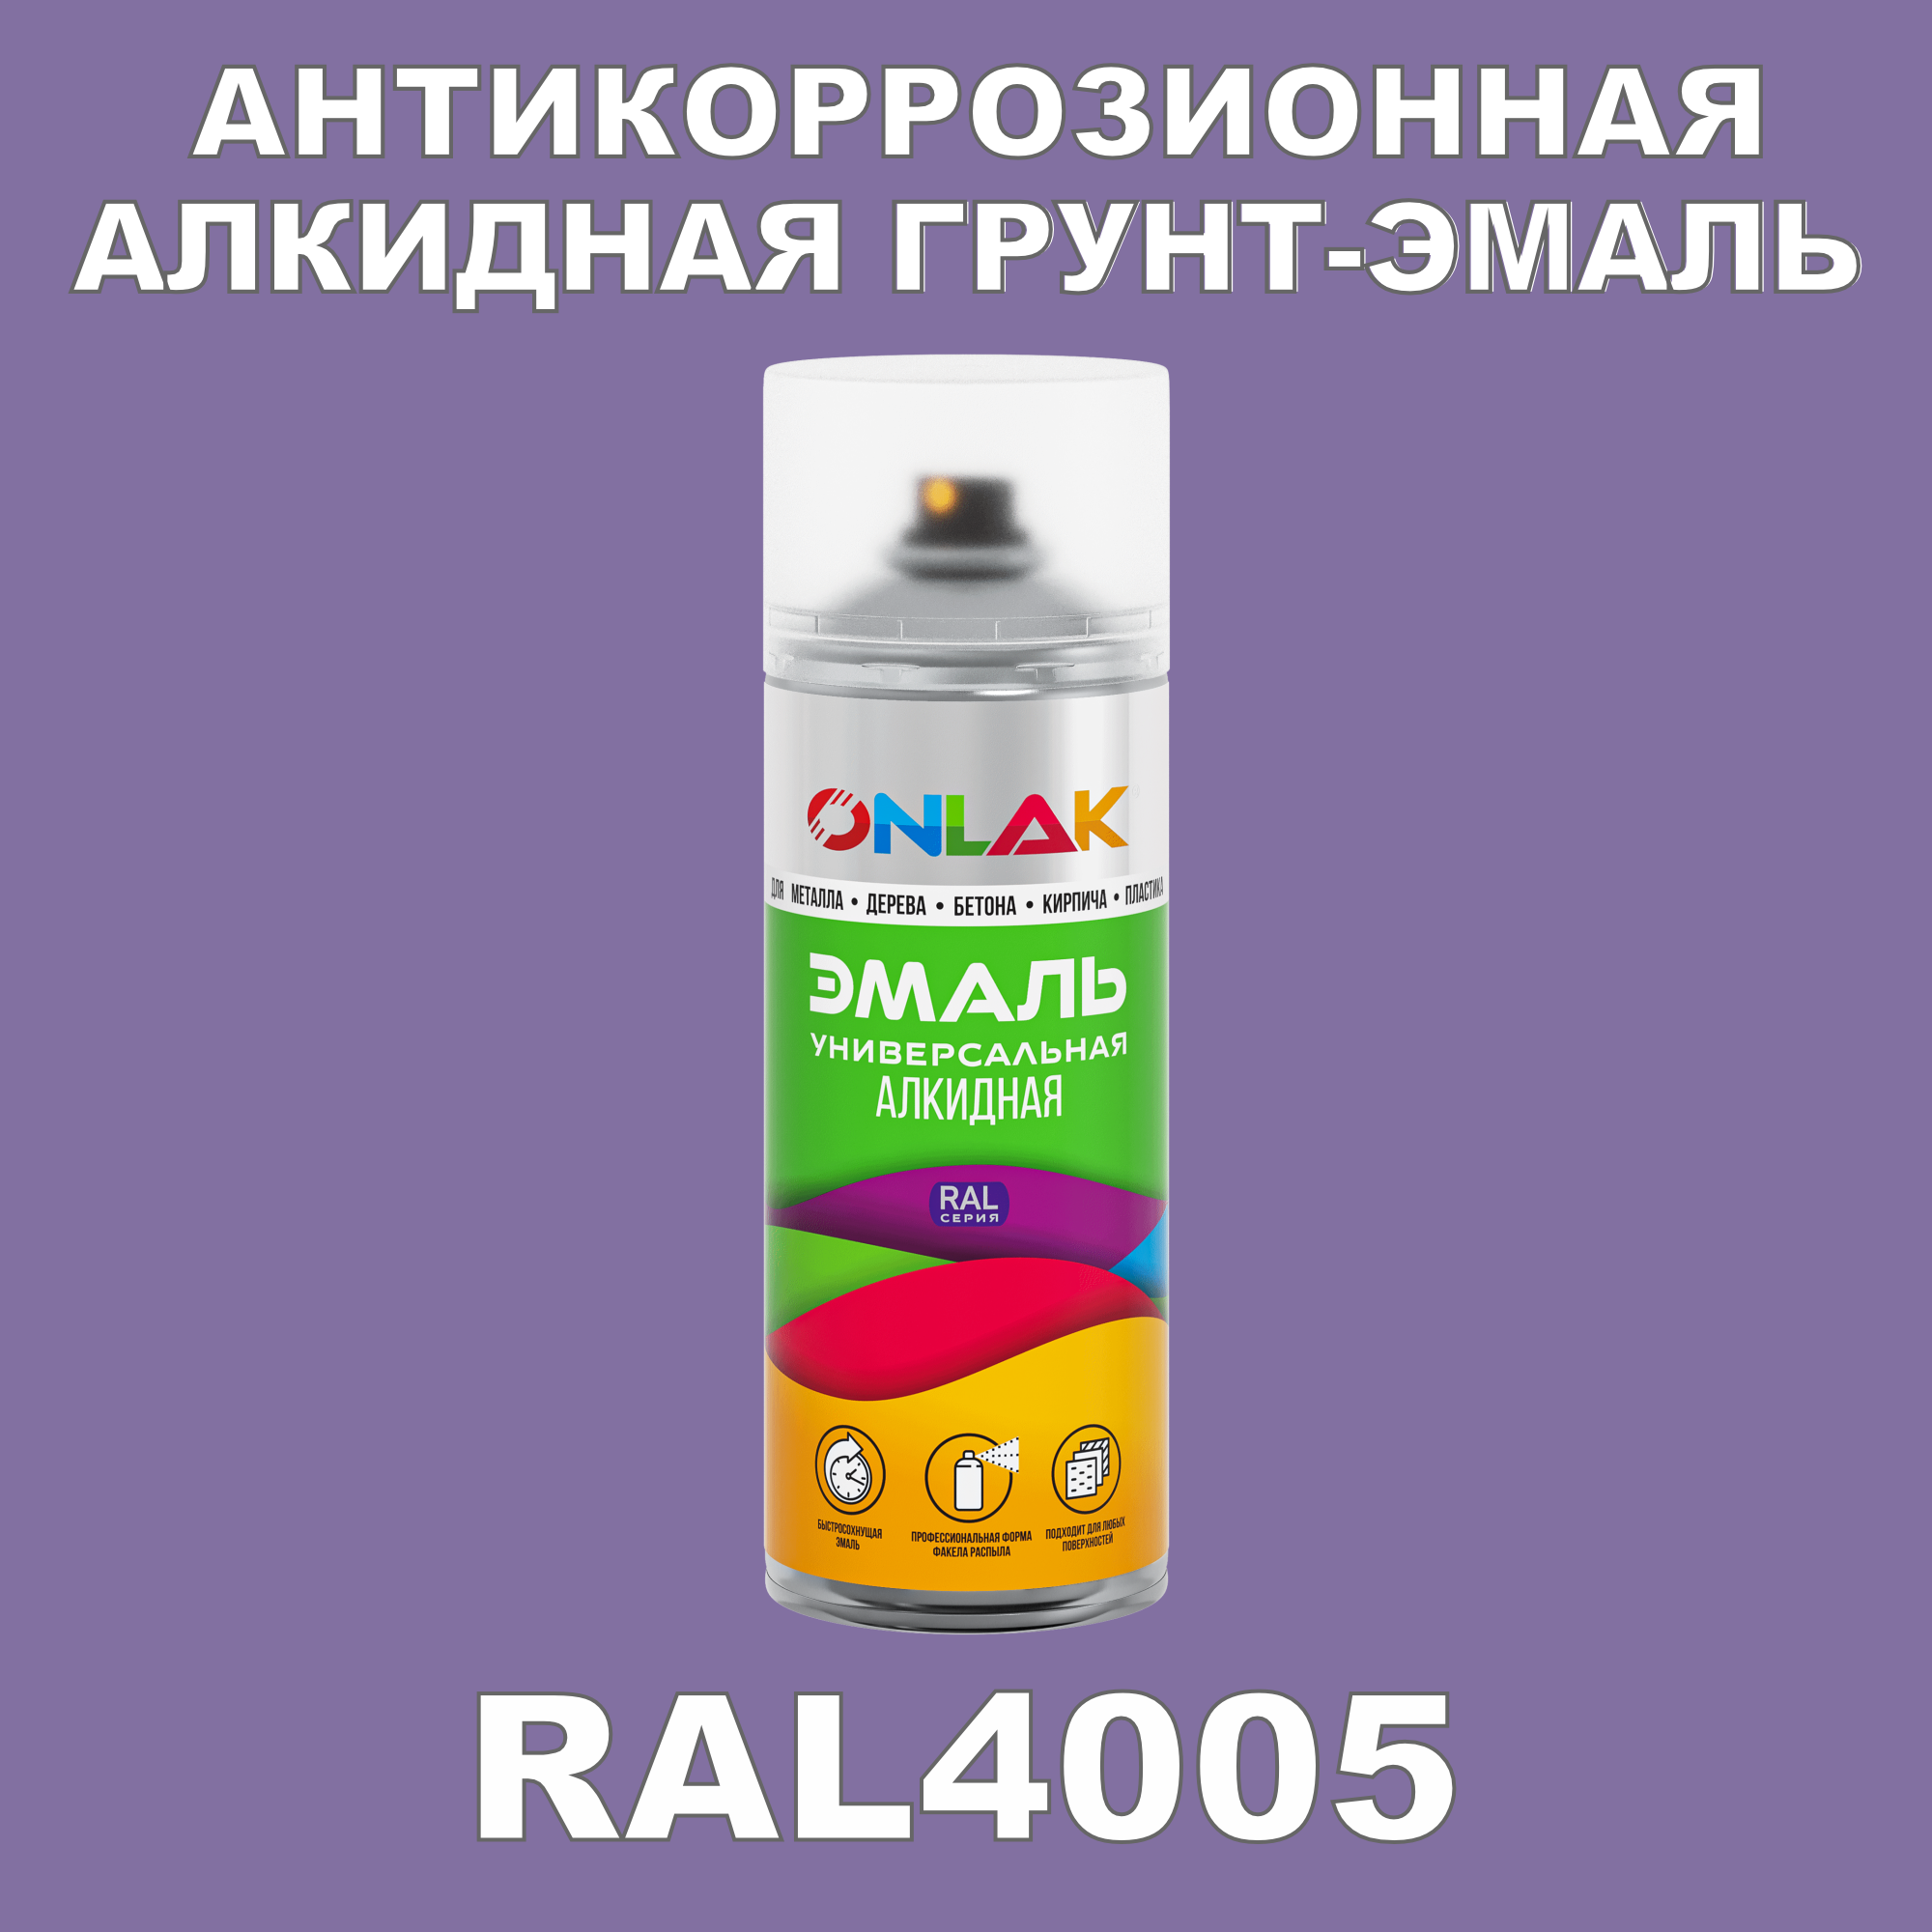 Антикоррозионная грунт-эмаль ONLAK RAL 4005,фиолетовый,662 мл ремень женский ширина 3 5 см плетенка пряжка металл фиолетовый